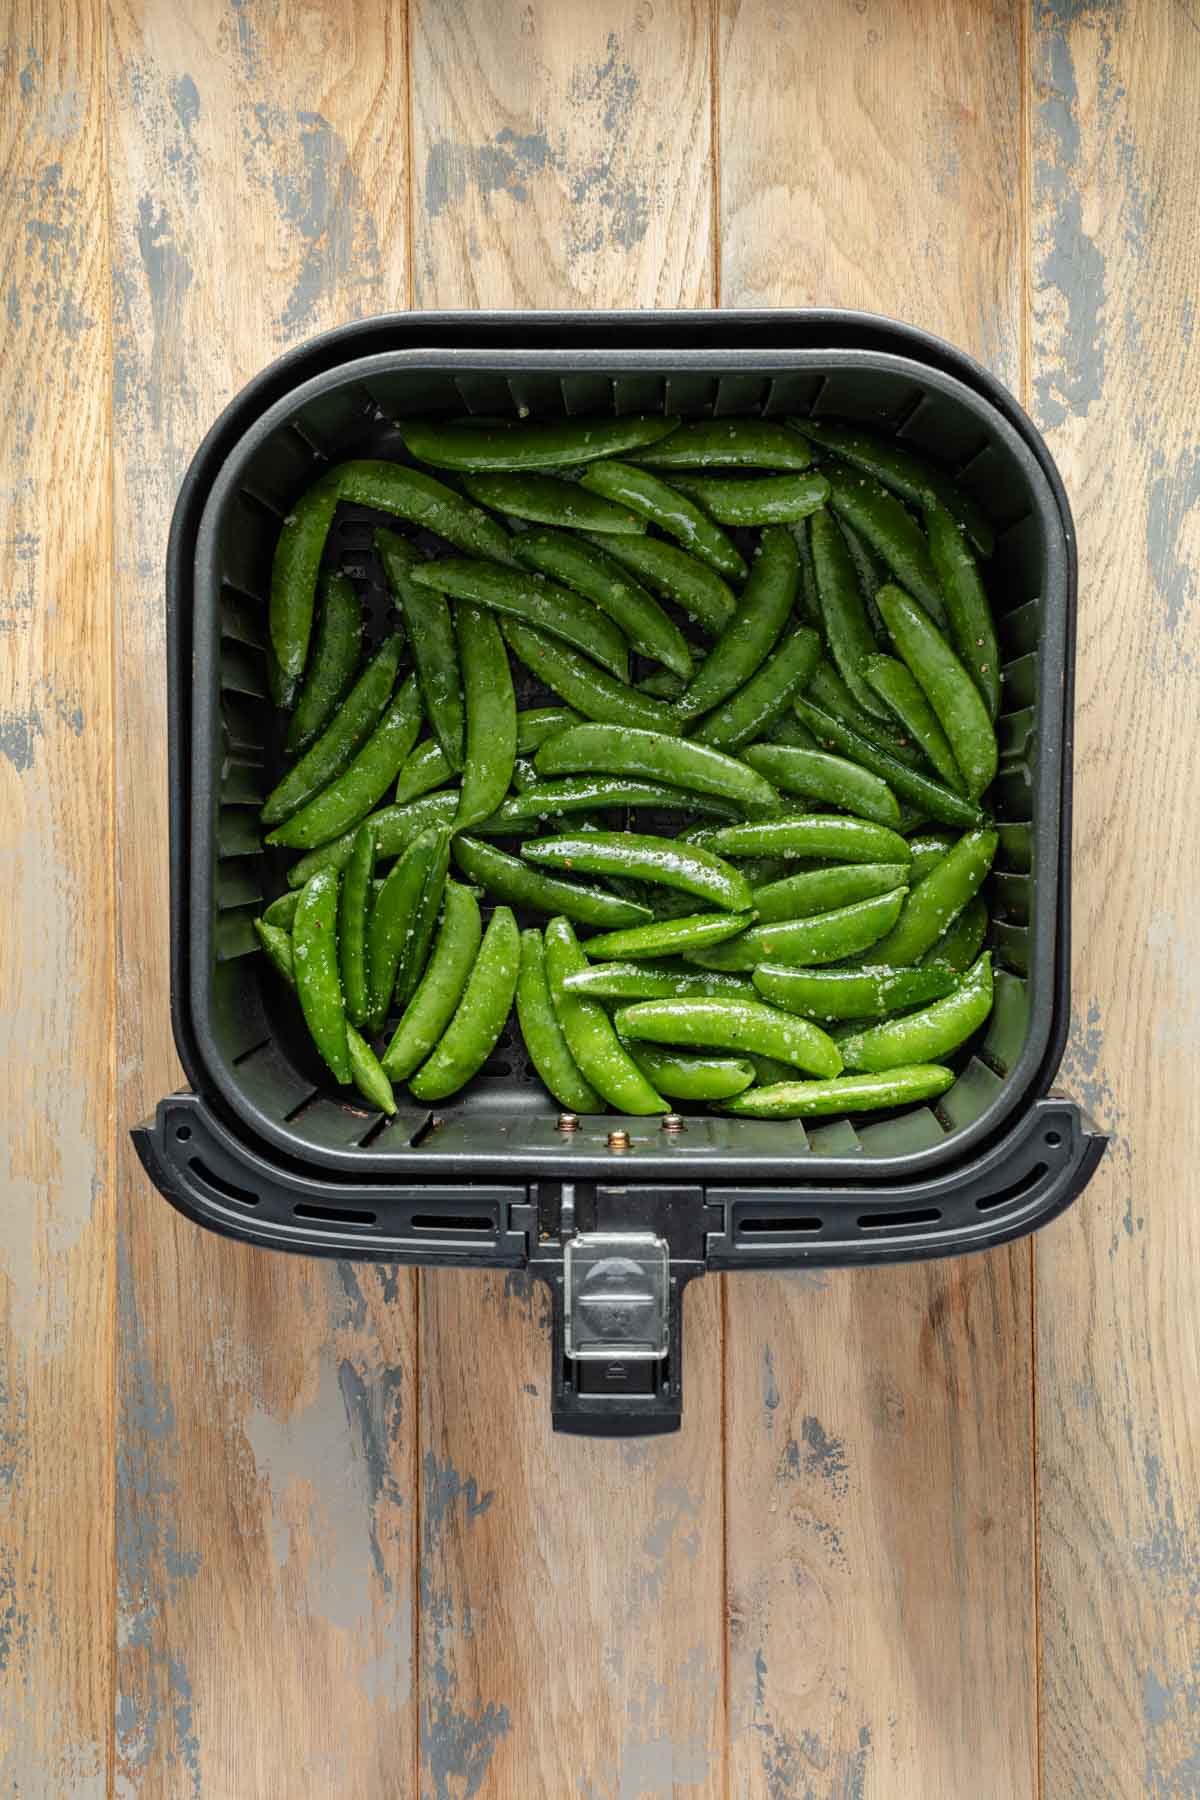 Seasoned snap peas in an air fryer basket.